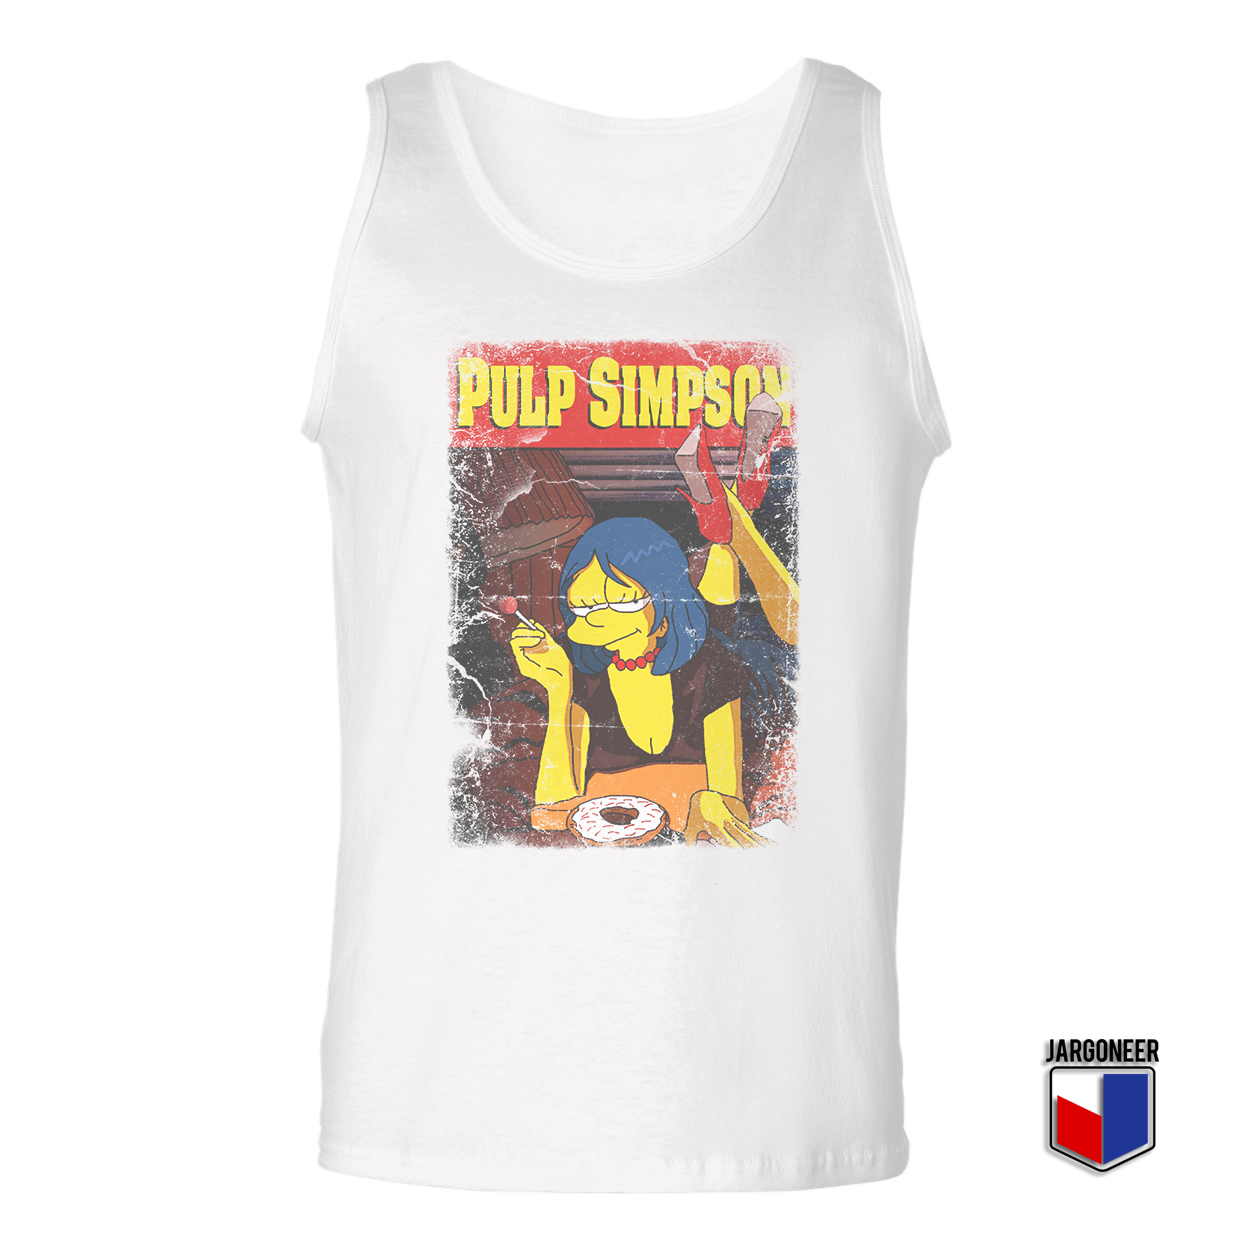 Pulp Simpson White Tank Top - Shop Unique Graphic Cool Shirt Designs